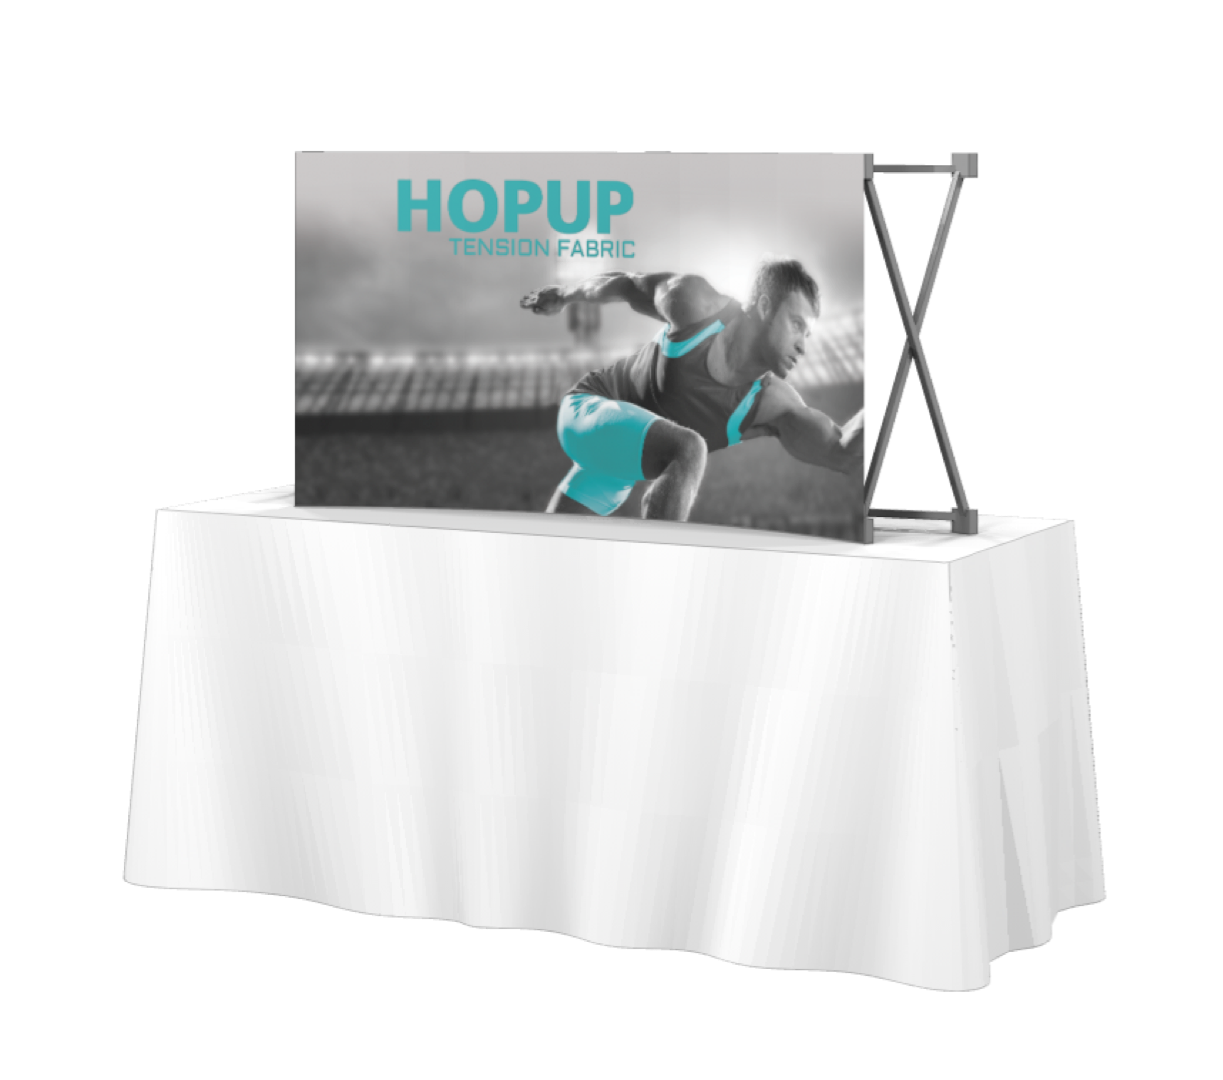 HopUp 2x1 Tabletop Tension Fabric Display- No Endcaps